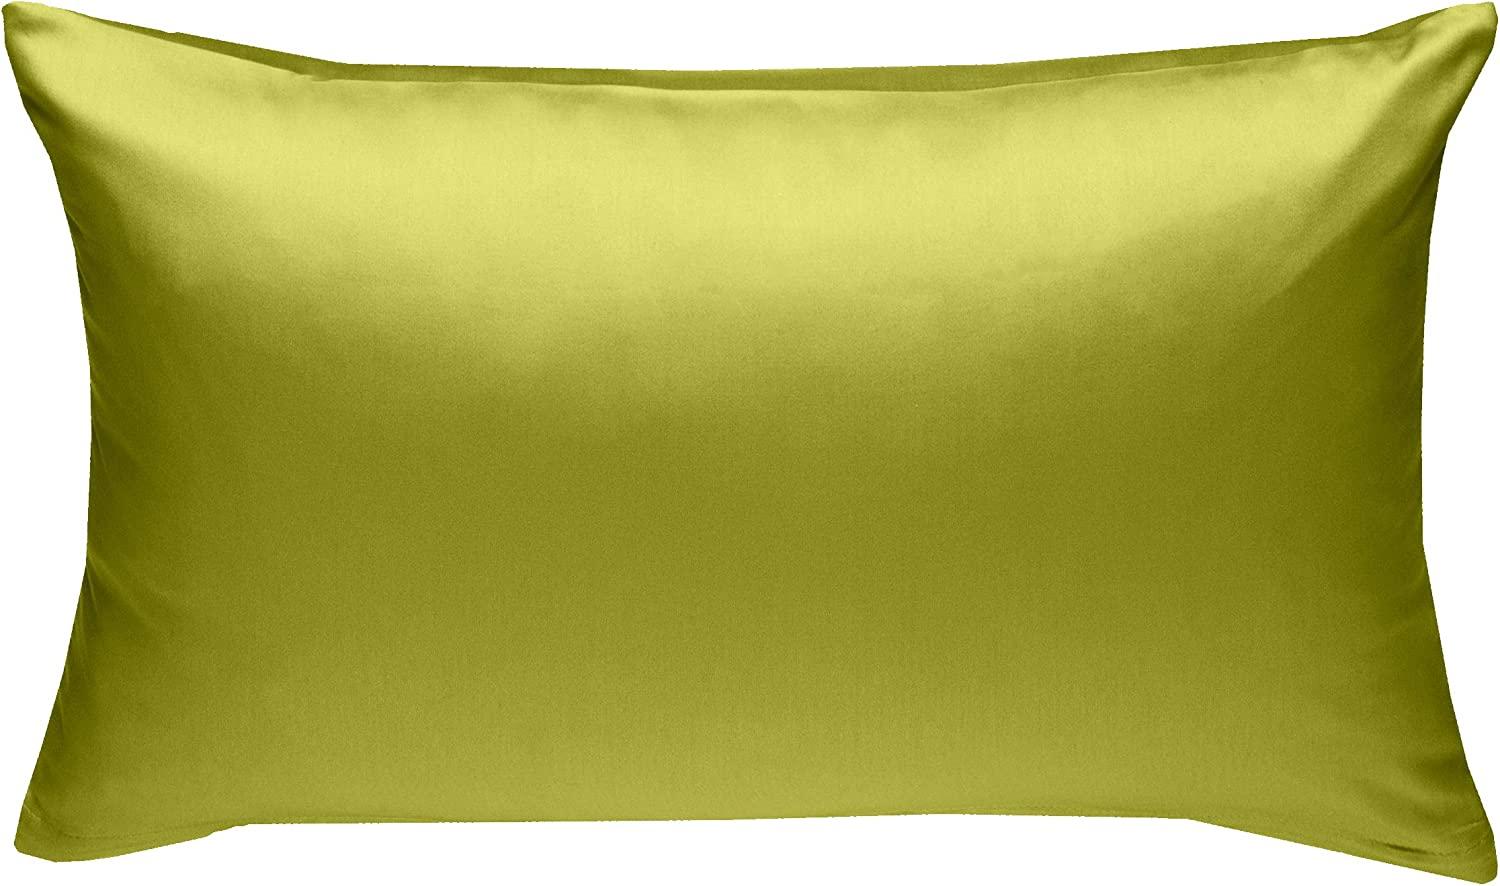 Bettwaesche-mit-Stil Mako-Satin / Baumwollsatin Bettwäsche uni / einfarbig grün Kissenbezug 60x80 cm Bild 1